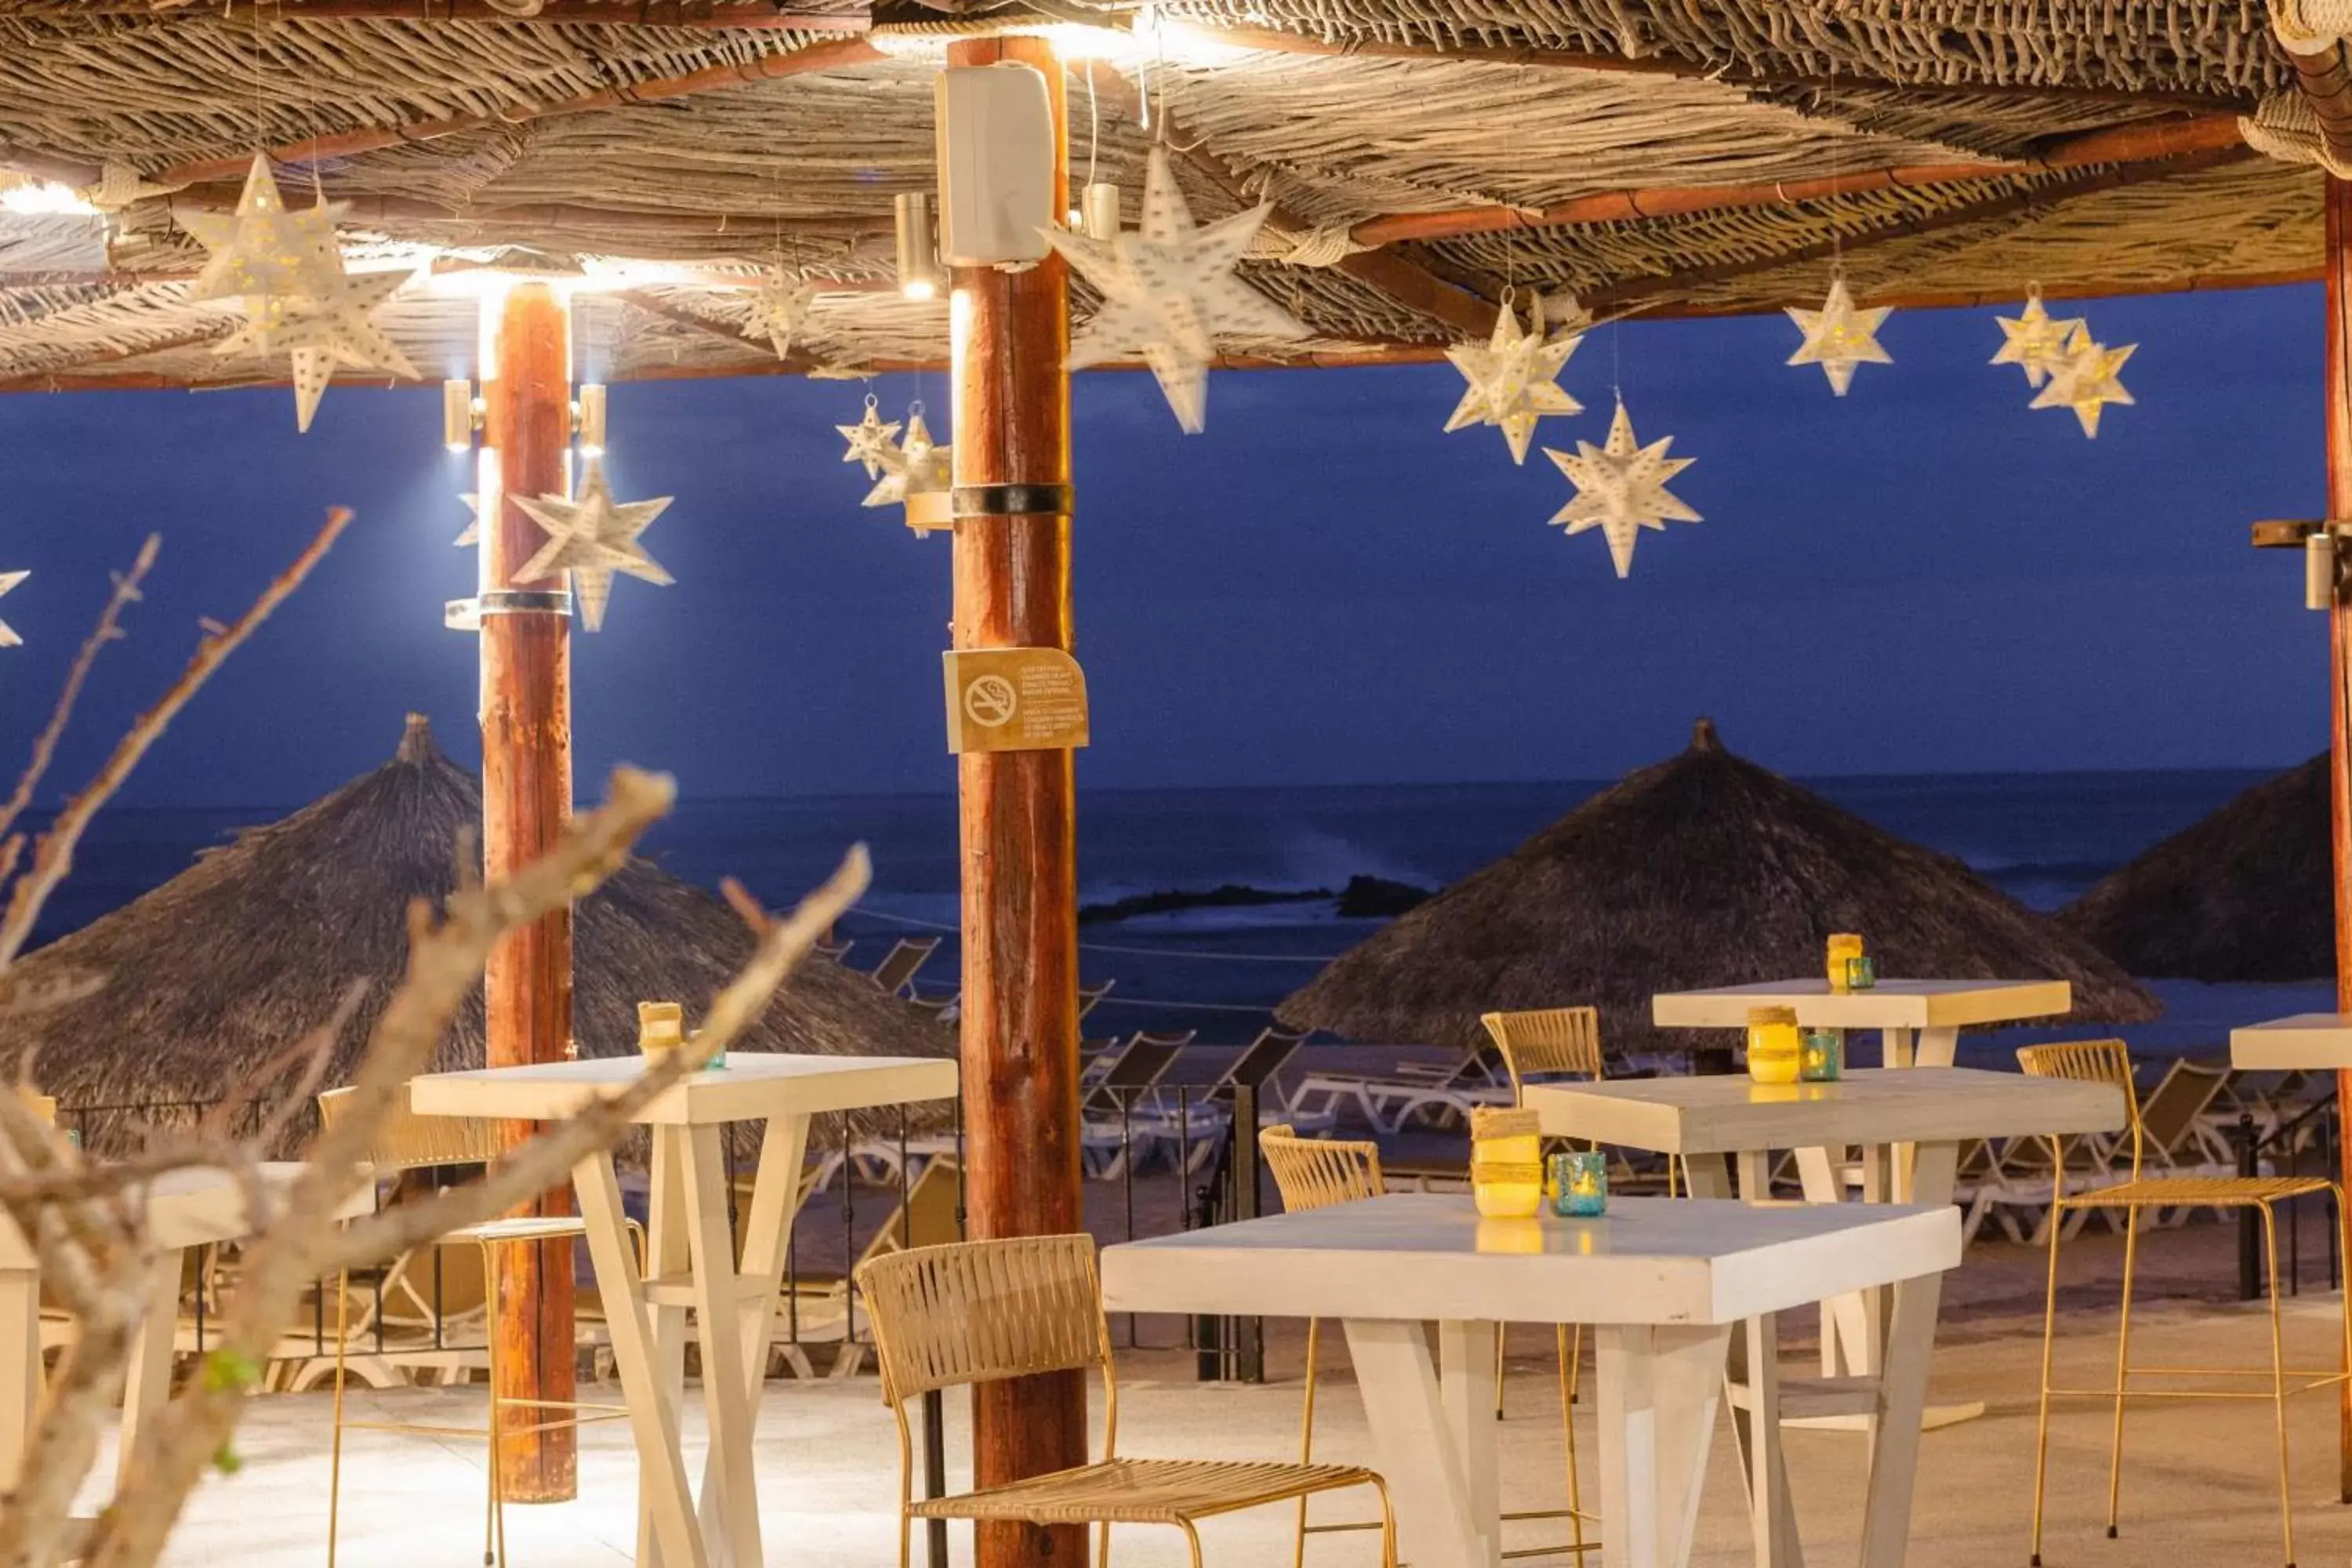 Restaurant/places to eat in Hacienda del Mar Los Cabos